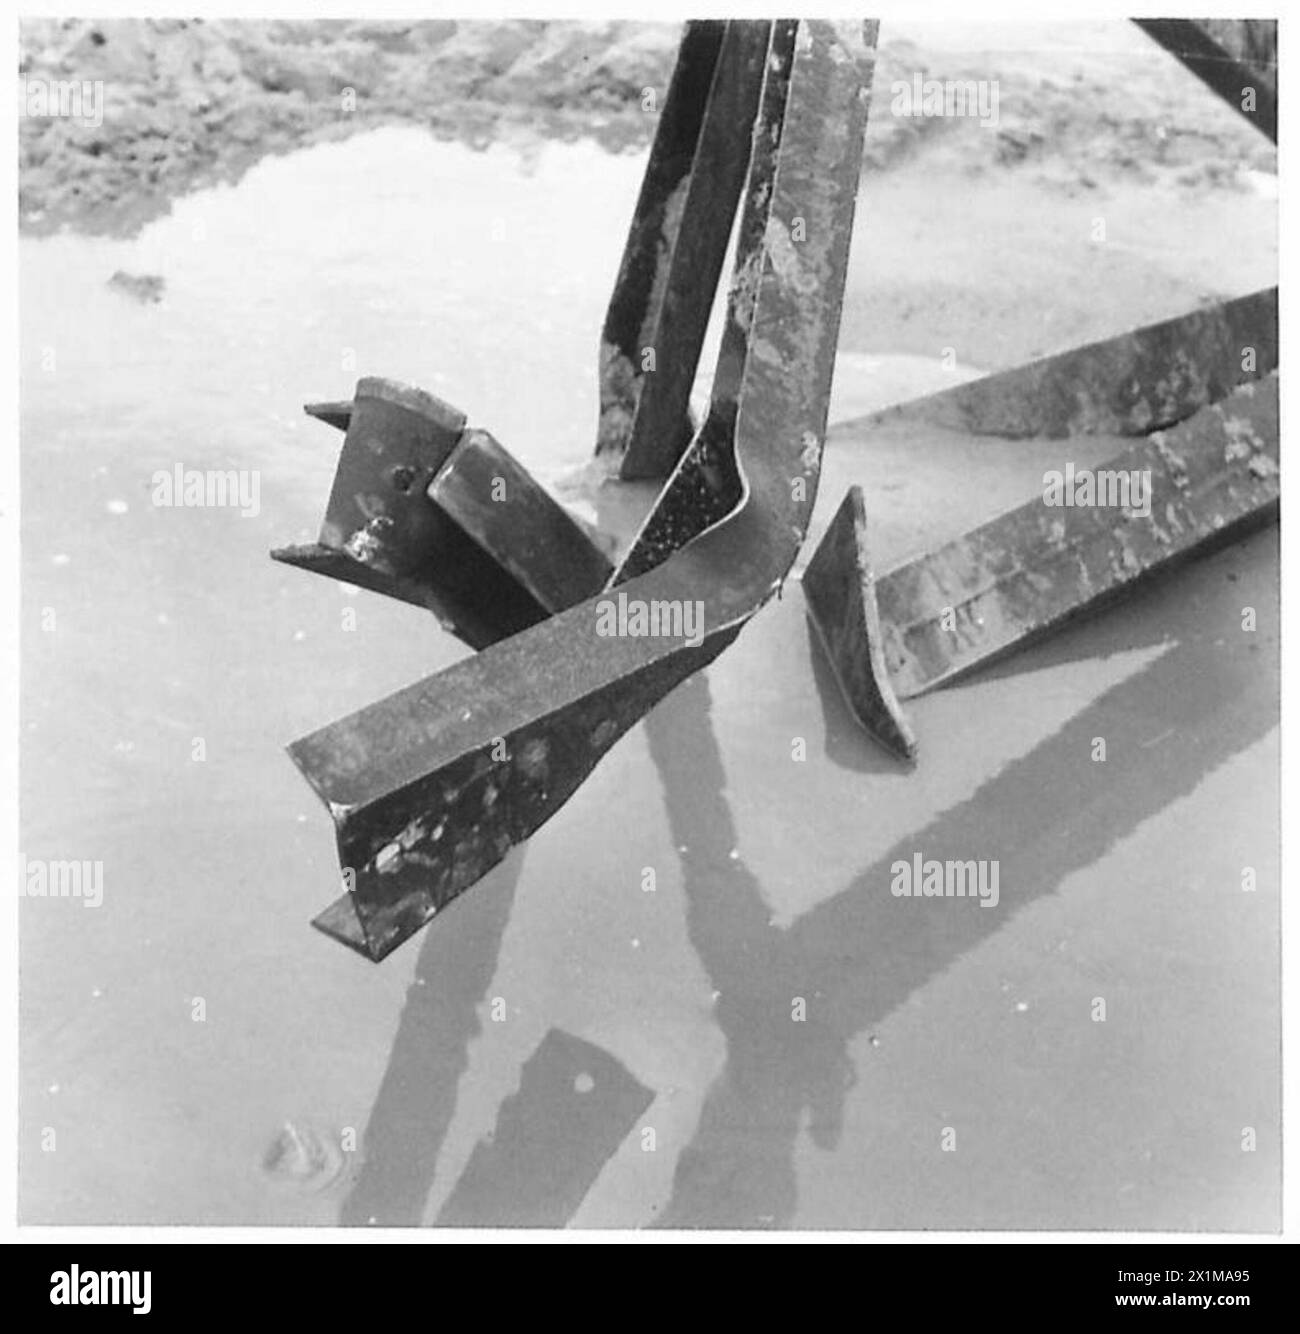 SONDERAUFTRAG FÜR 79. GEPANZERTE DIVISIONFLAIL-PANZER - Wirkung der Chruchill-Ladung beschädigter Grundplatte und Waffen, britische Armee Stockfoto